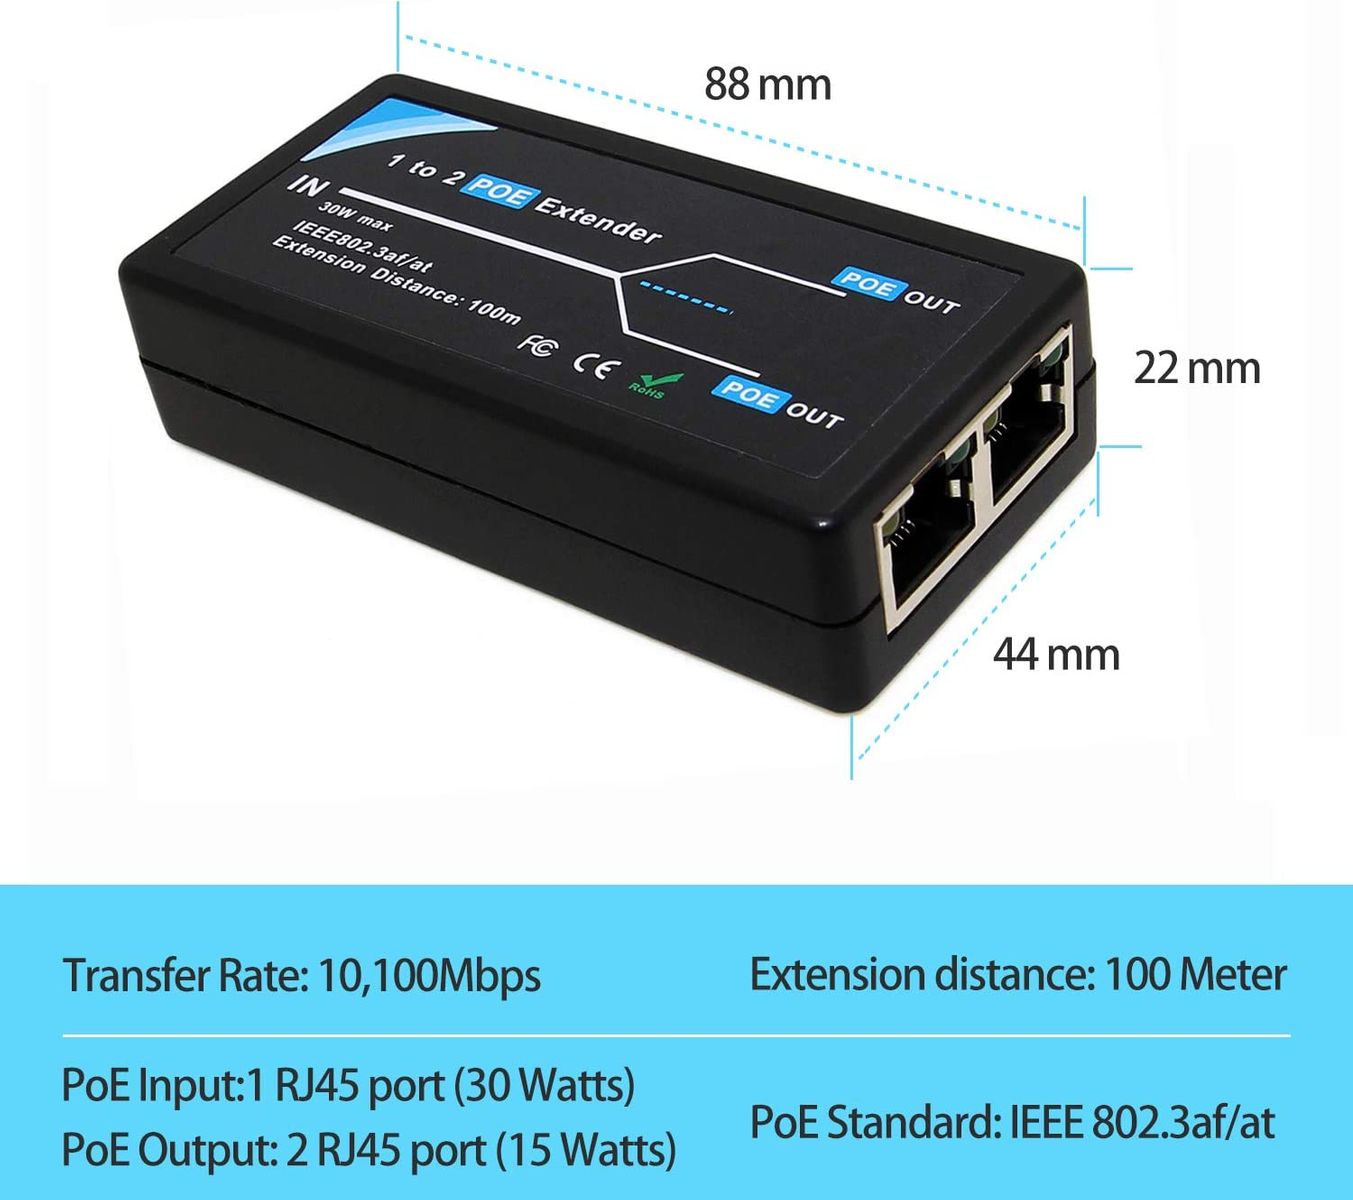 Revotech 2 Port POE Extender 10,100Mbps IEEE 802.3af/at Standard Einhalten, POE Repeater 100 Meter(328 ft) Extender 1 in 2 Out für POE IP-Kamera über Cat5/Cat6 oder bessere UTP-Kabel (POE5003)